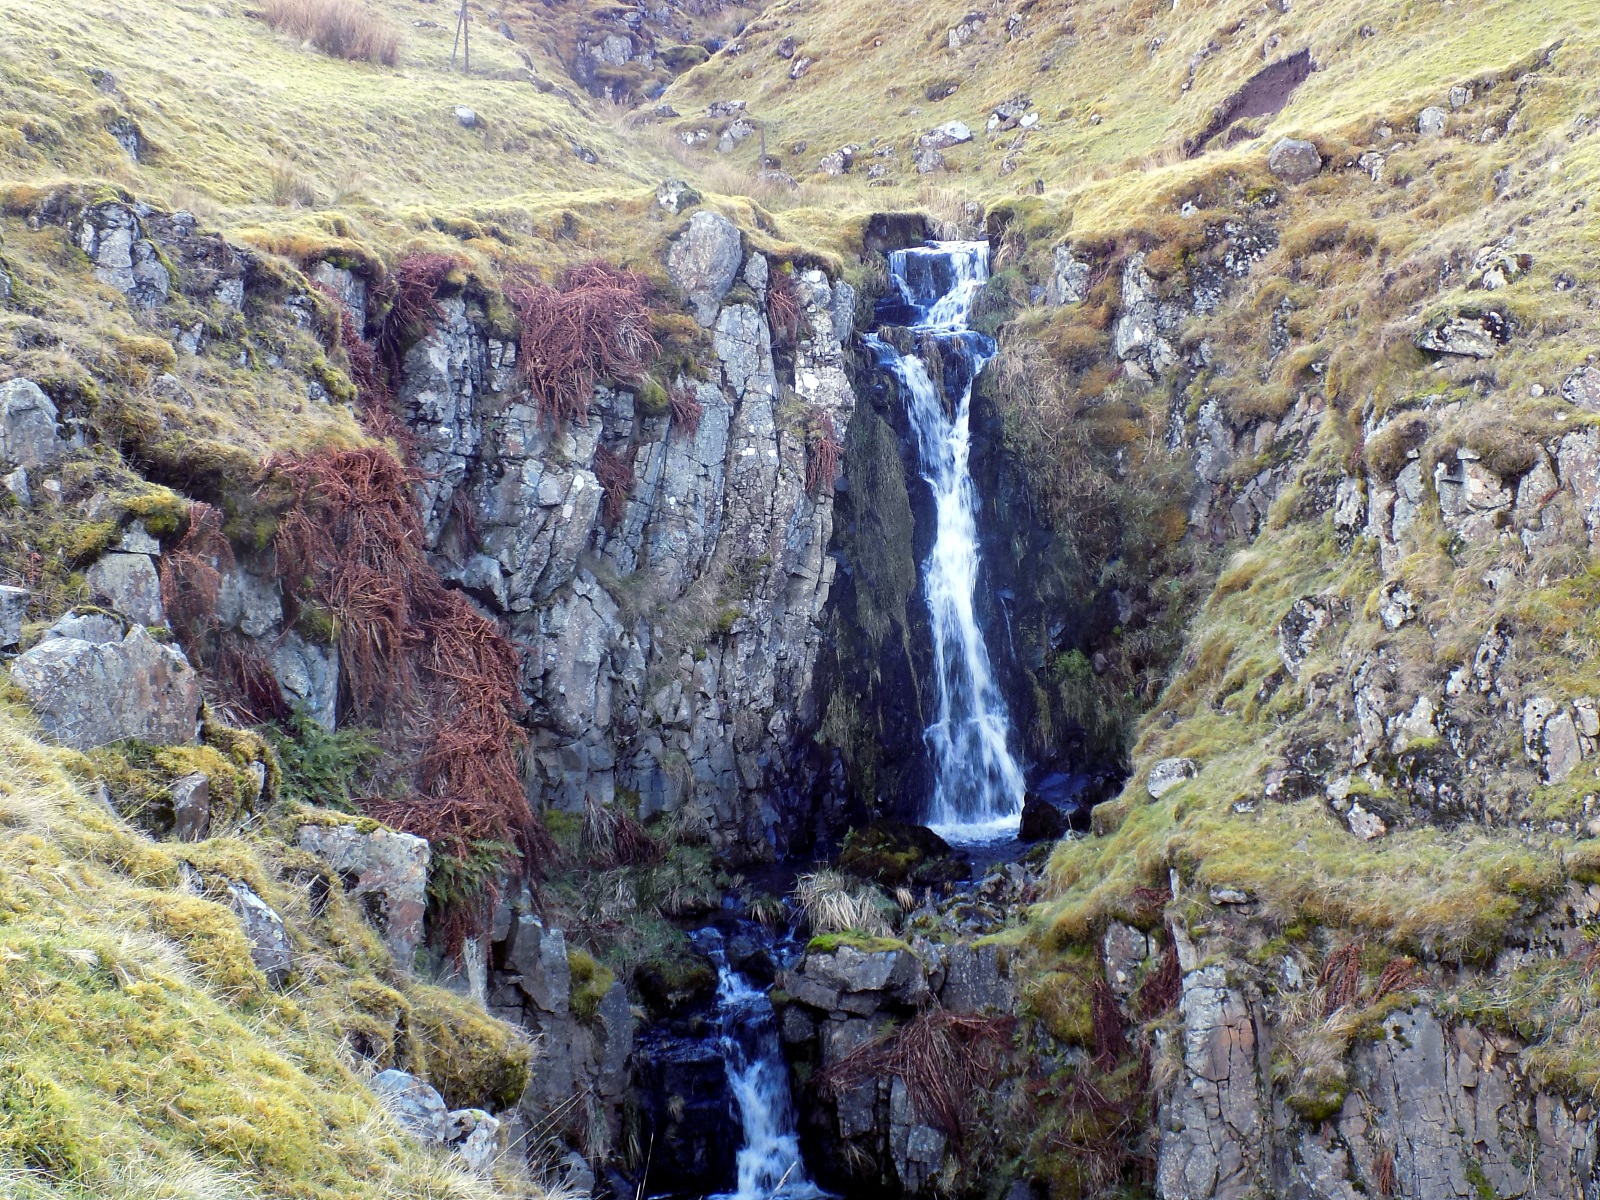 Waterfalls above Corrie Burn Glen